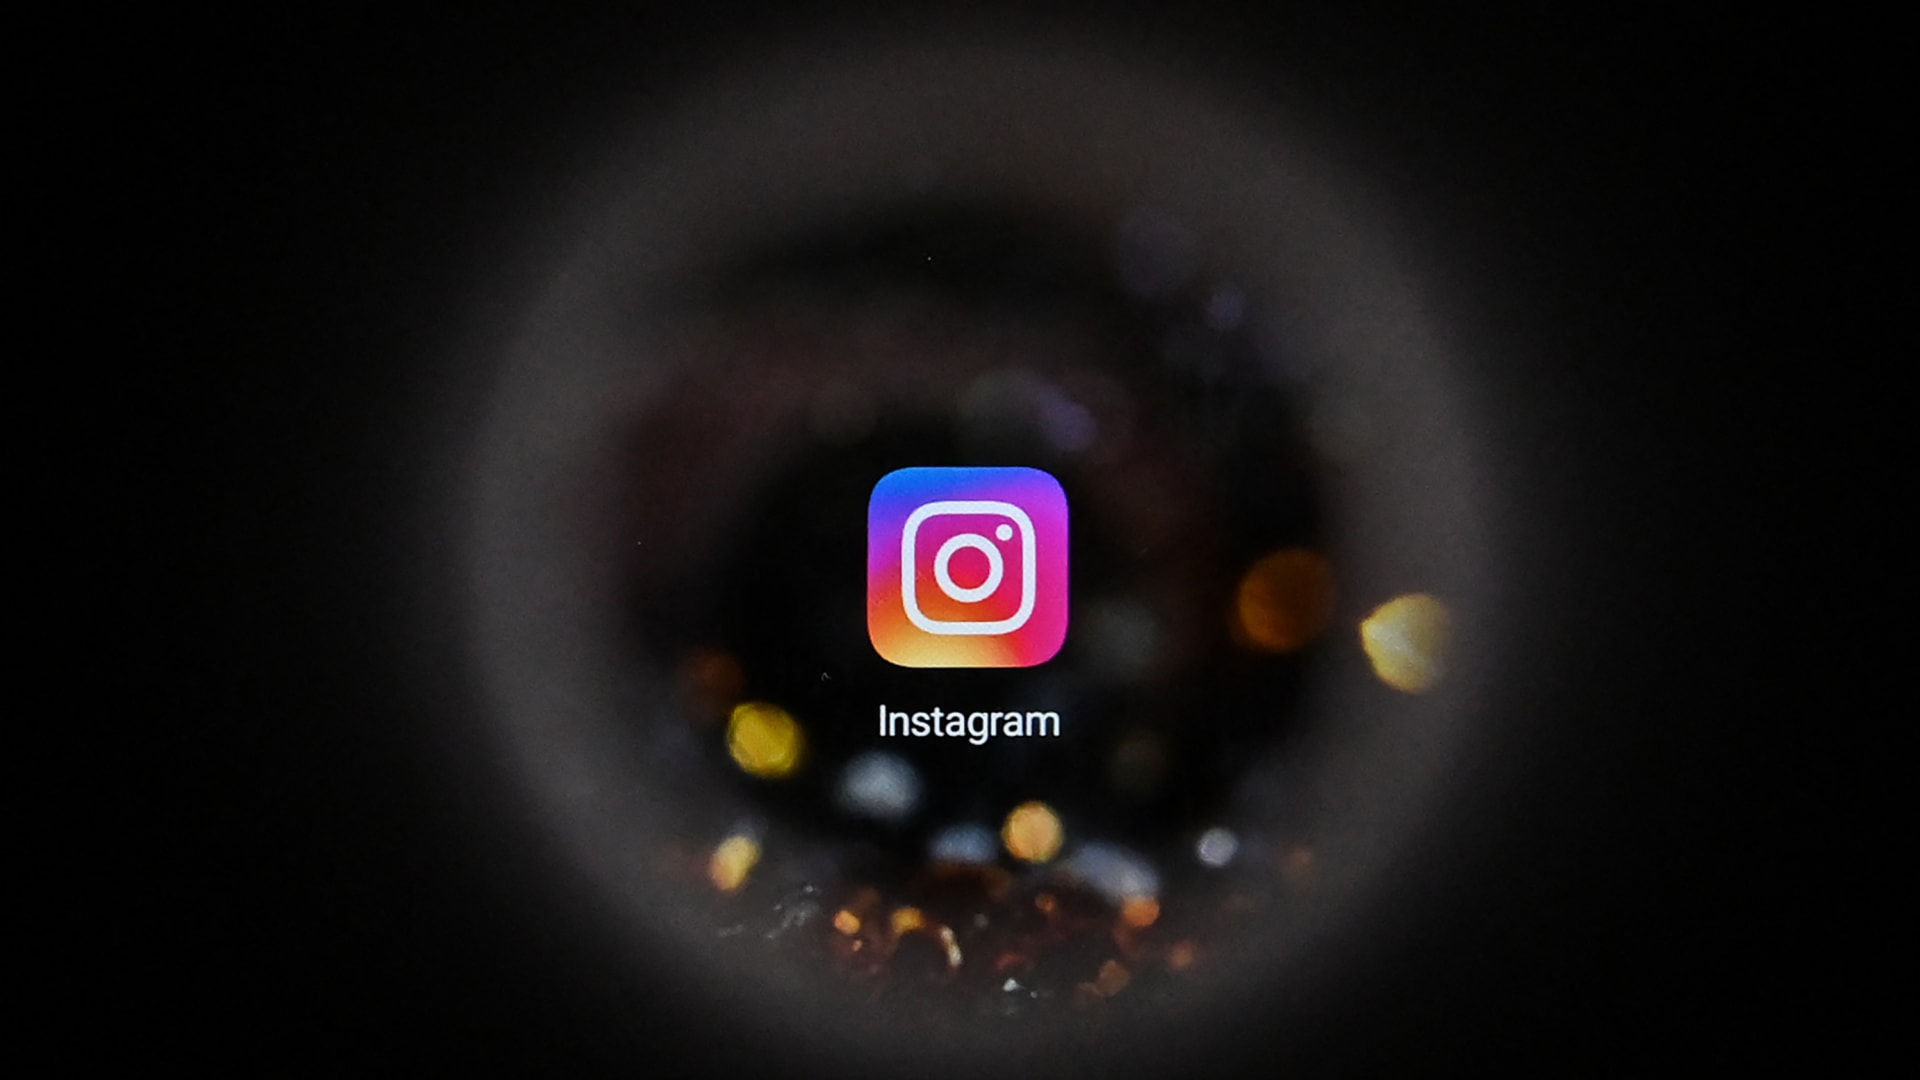 صورة التقطت في موسكو في 5 أكتوبر 2021 تُظهر شعار Instagram الخاص بالشبكة الاجتماعية على شاشة الهاتف الذكي